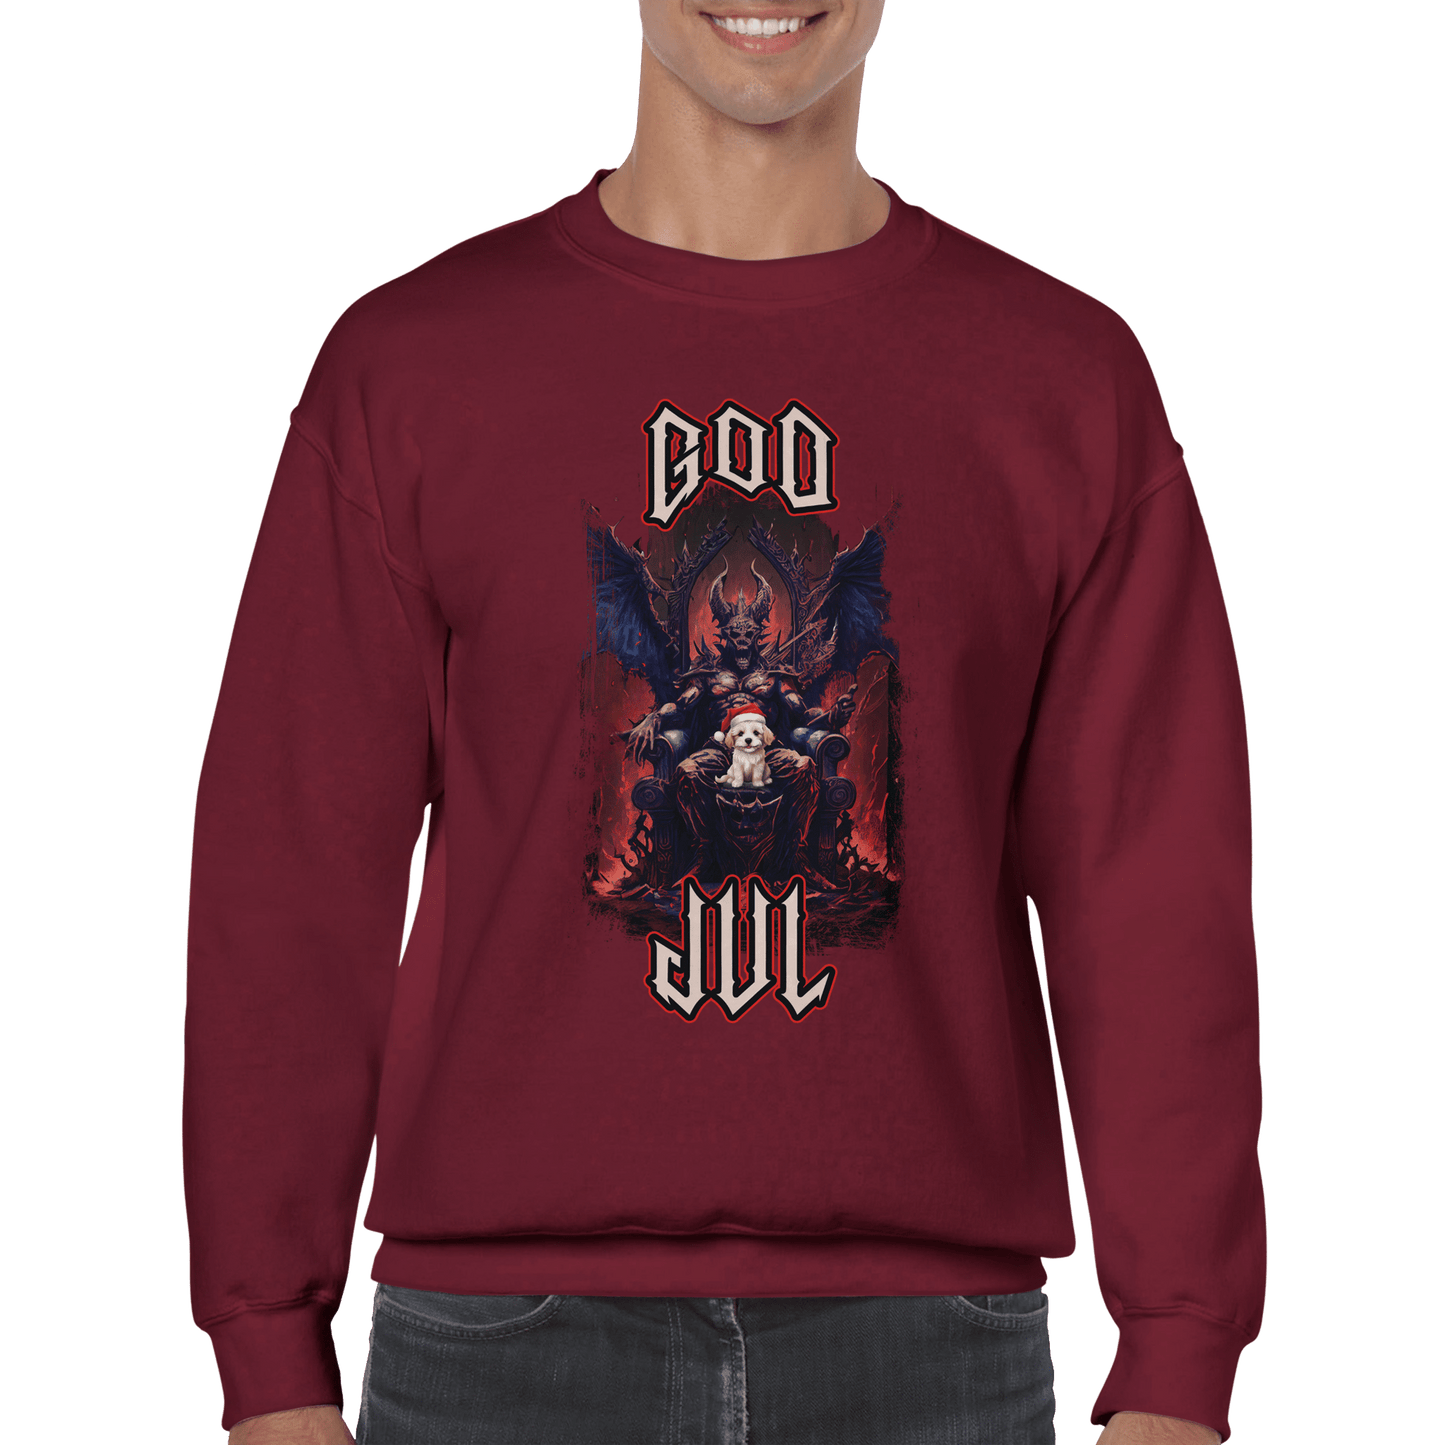 God Jul häftig hundvalp - Sweatshirt 